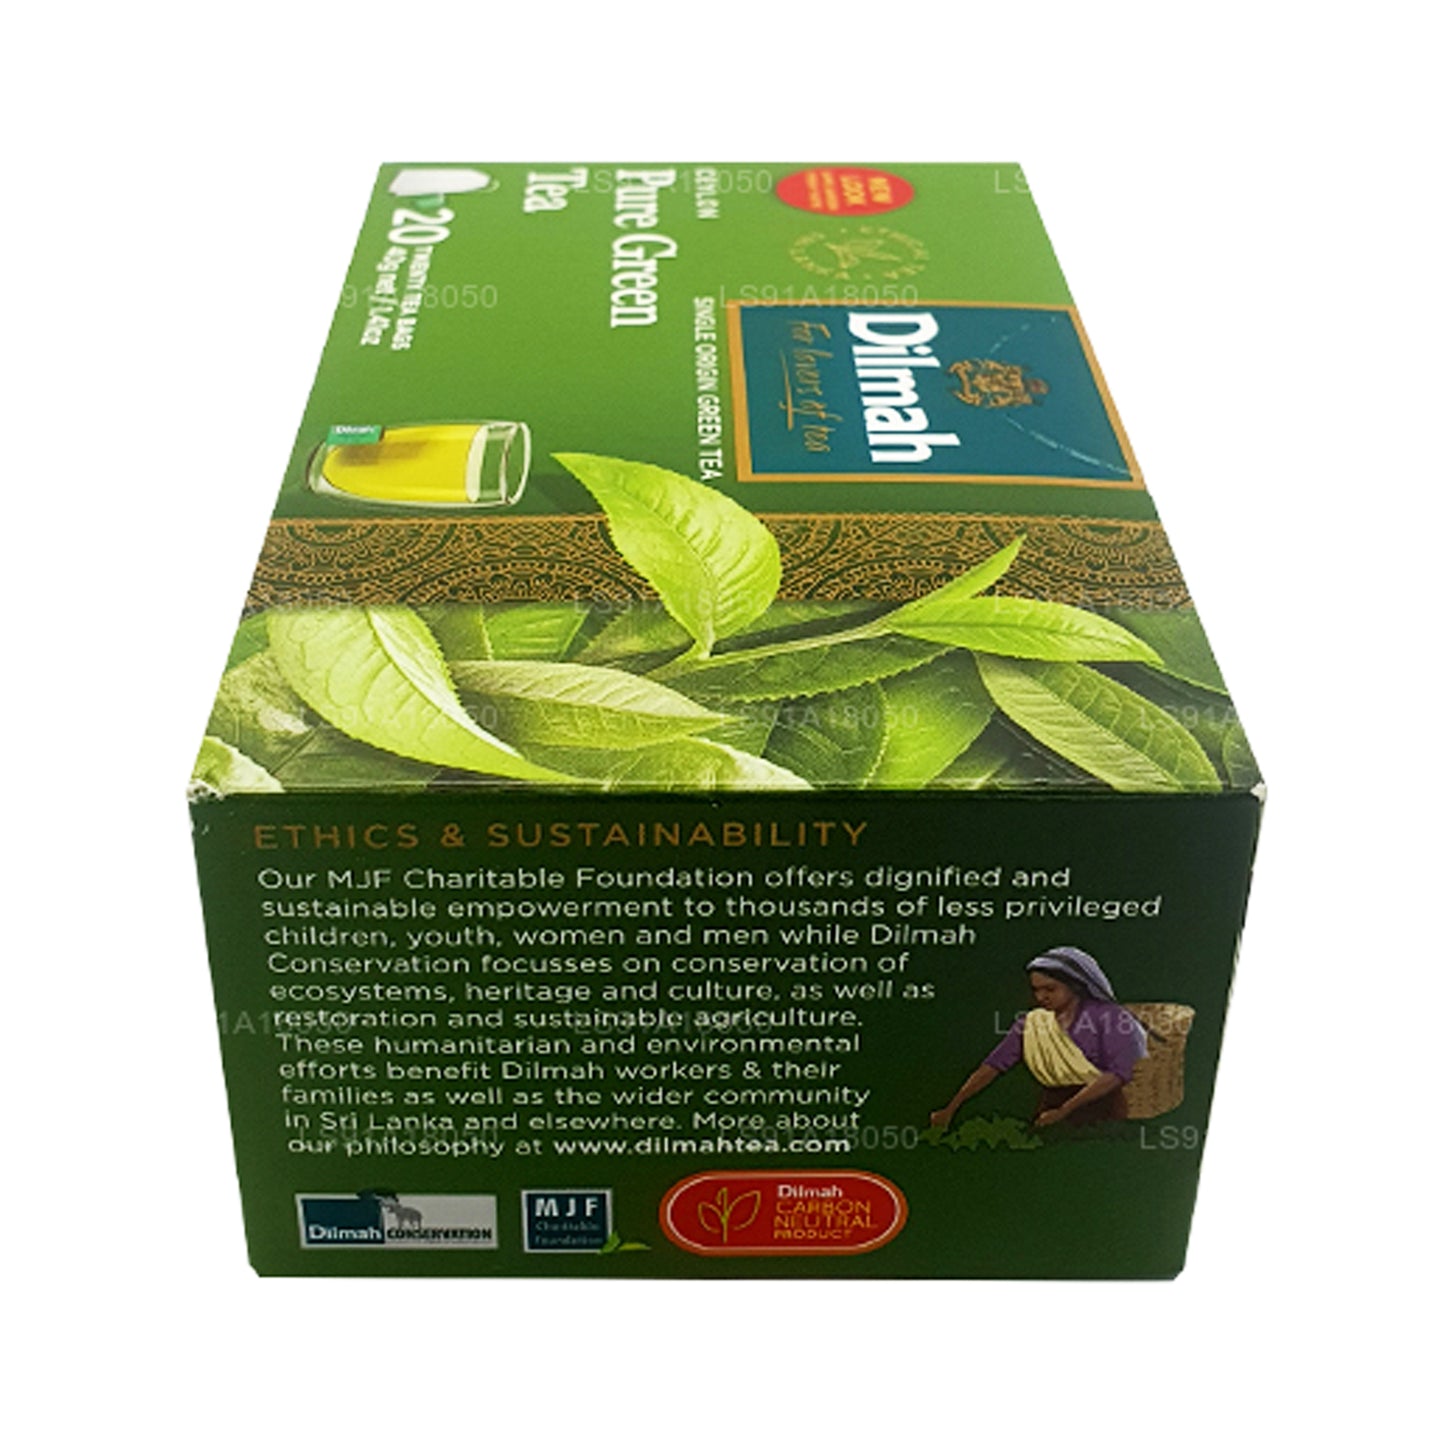 Dilmah Pure Tseiloni roheline tee (40g) 20 tee kotid